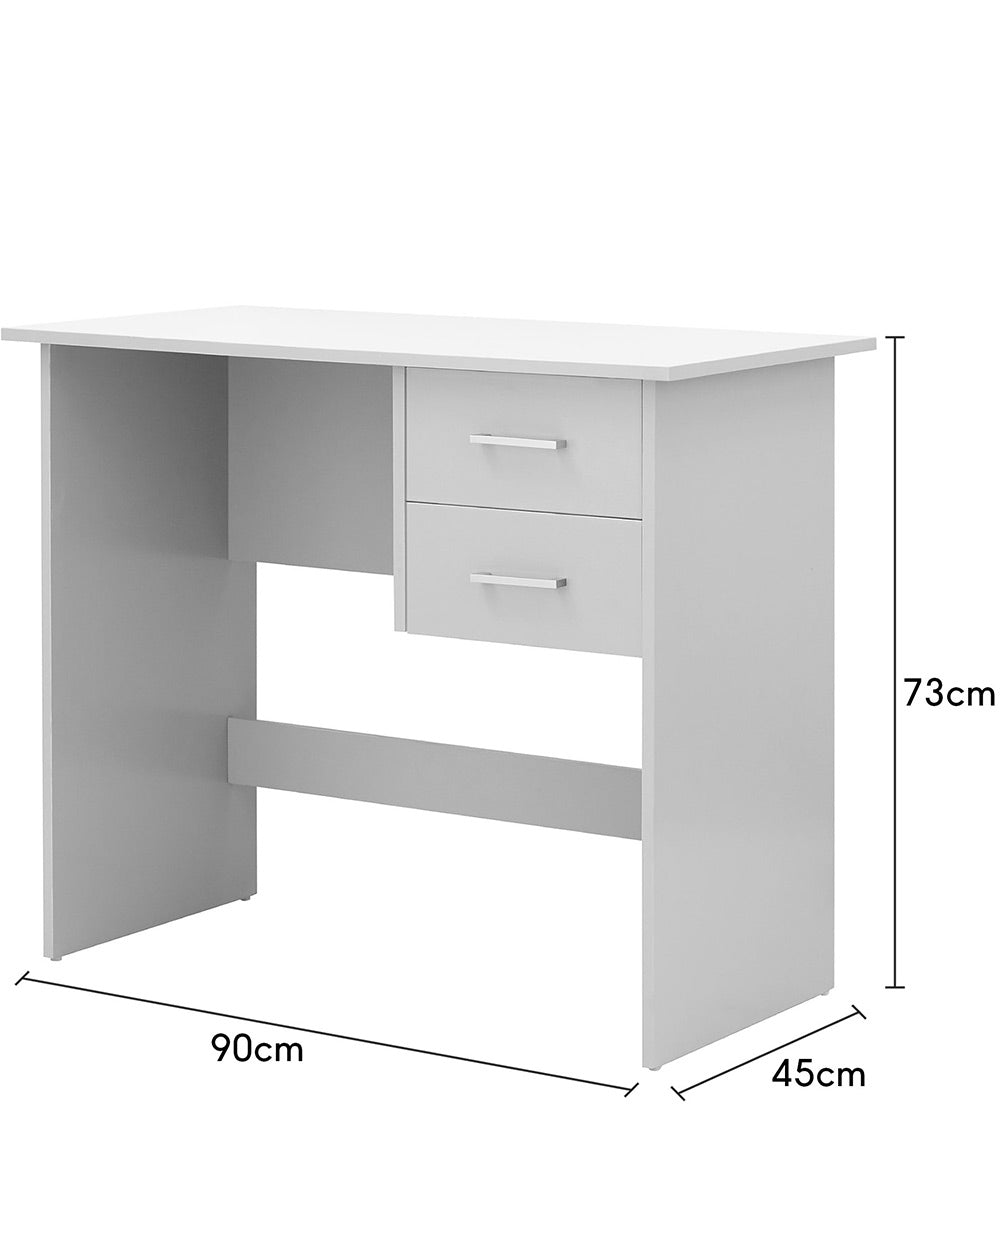 Panama desk in grey measurements